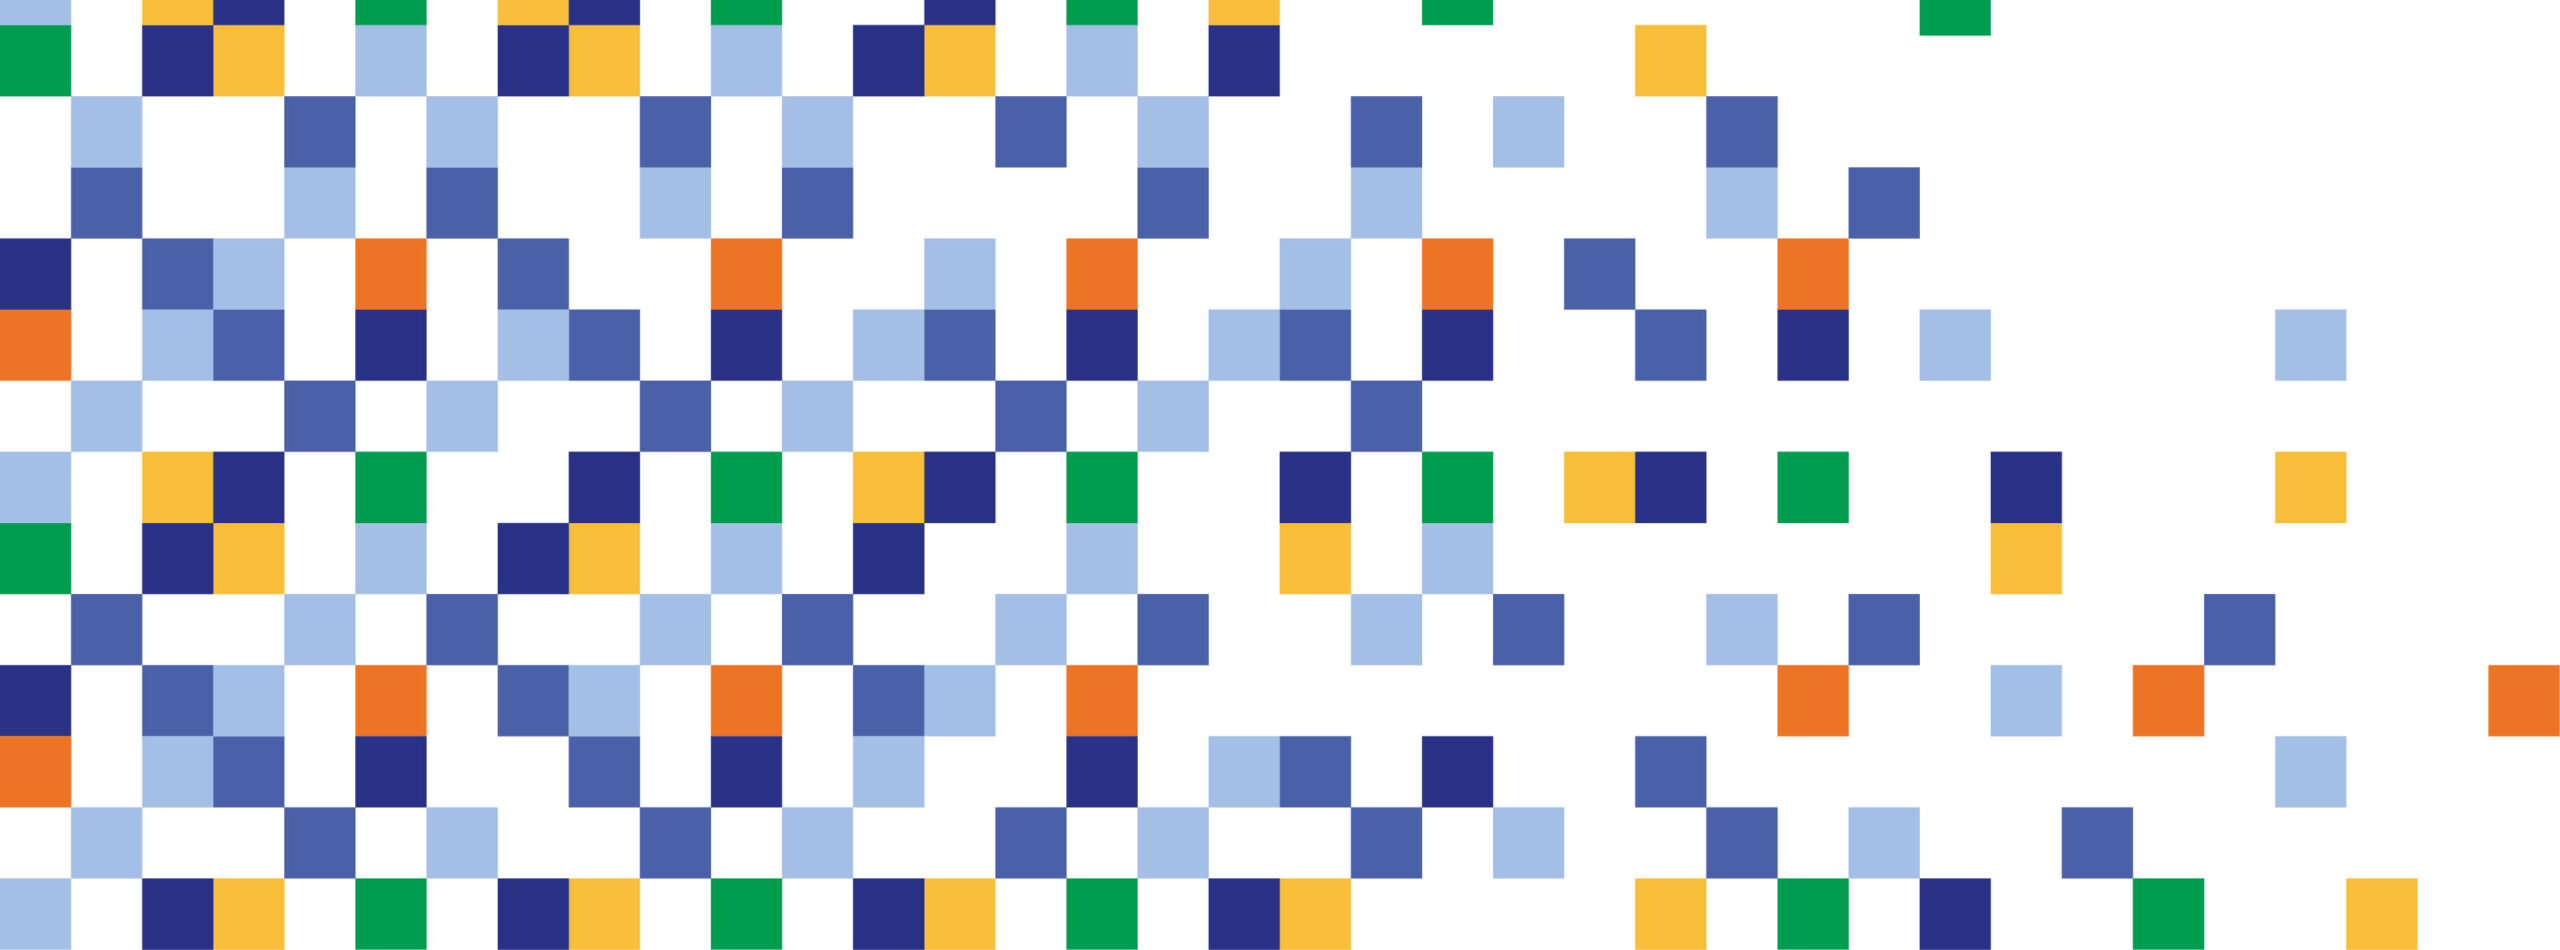 Diseño gráfico con cuadrados pixelados en celeste, azul, naranjo, amarillo y verde, representando los colores identitarios del Centro de Patrimonio Cultural UC.